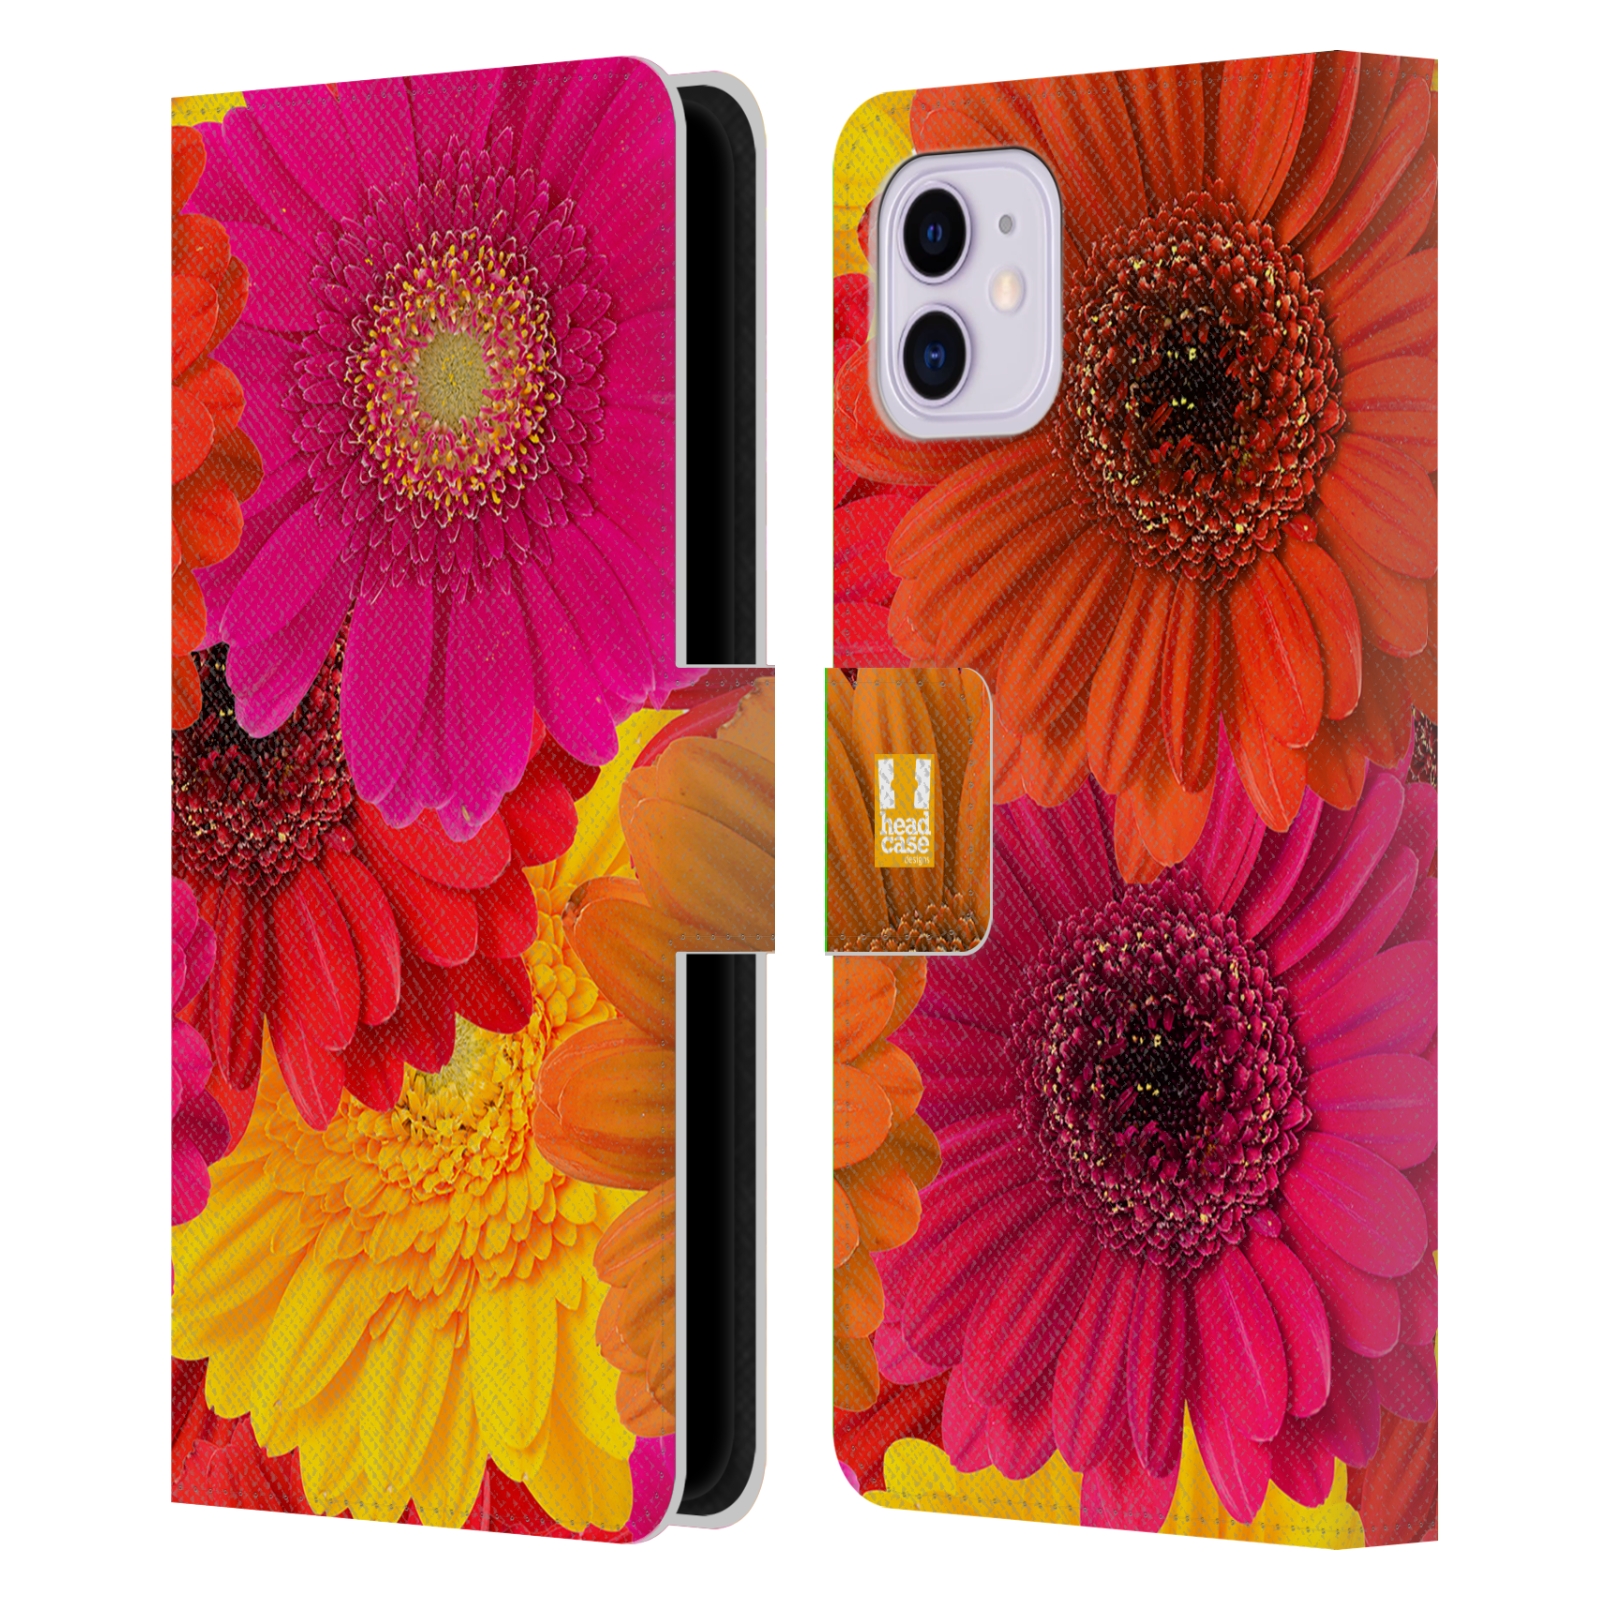 Pouzdro na mobil Apple Iphone 11 květy foto fialová, oranžová GERBERA